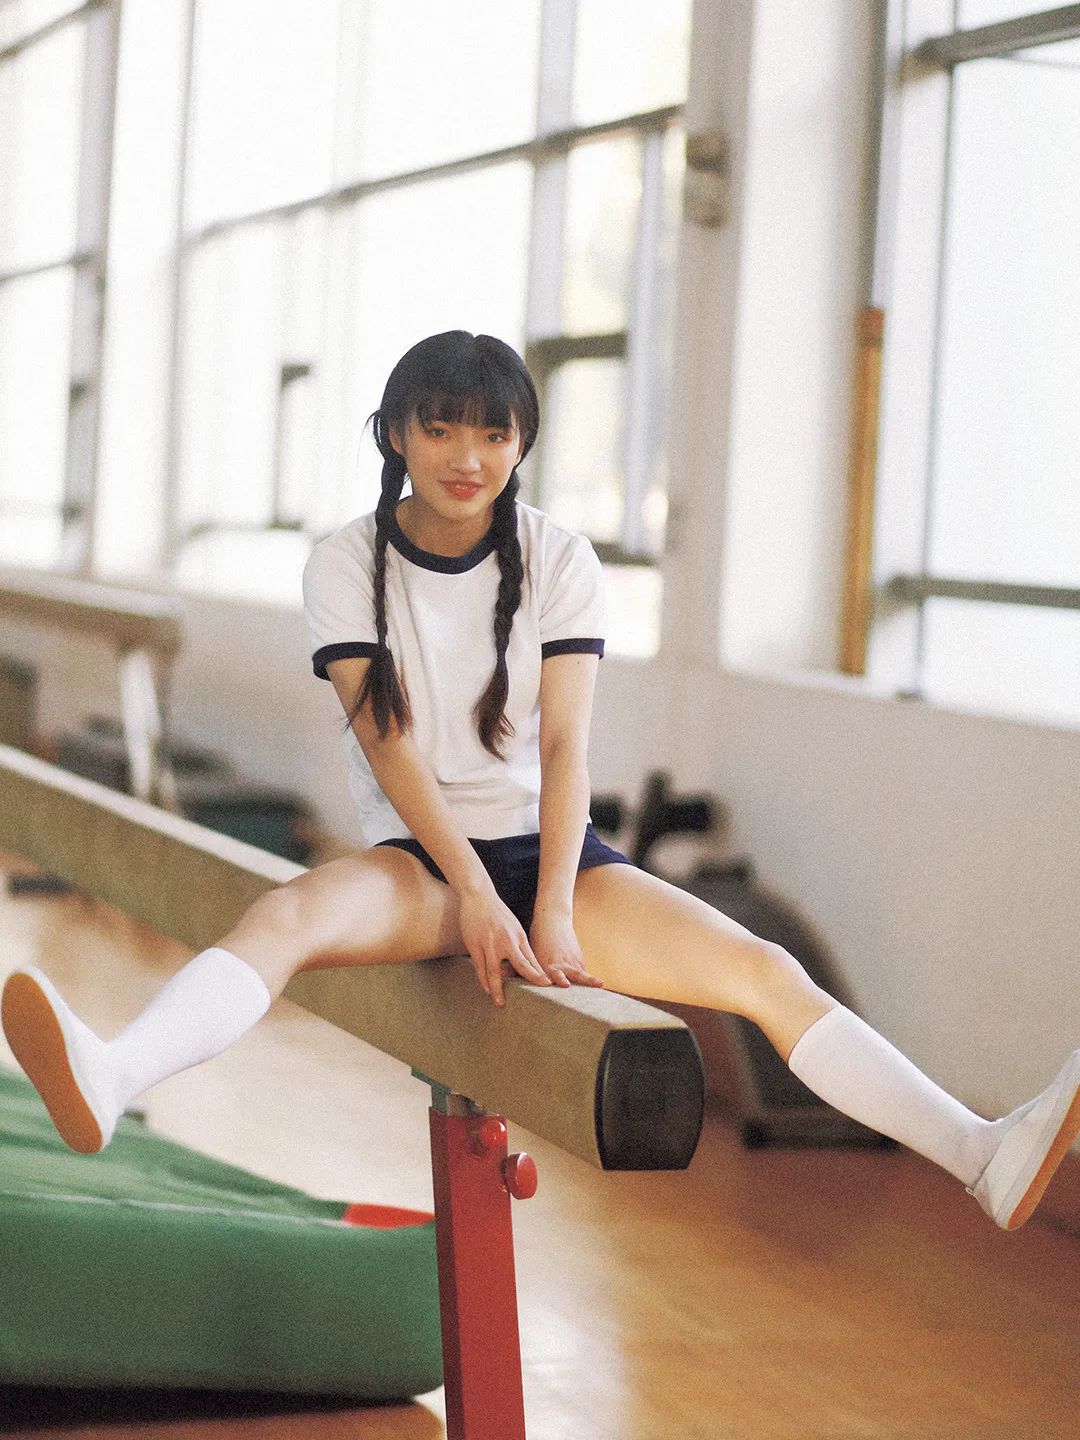 体育系女孩体操服日系写真 Ck顶尖摄影 微信公众号文章阅读 Wemp